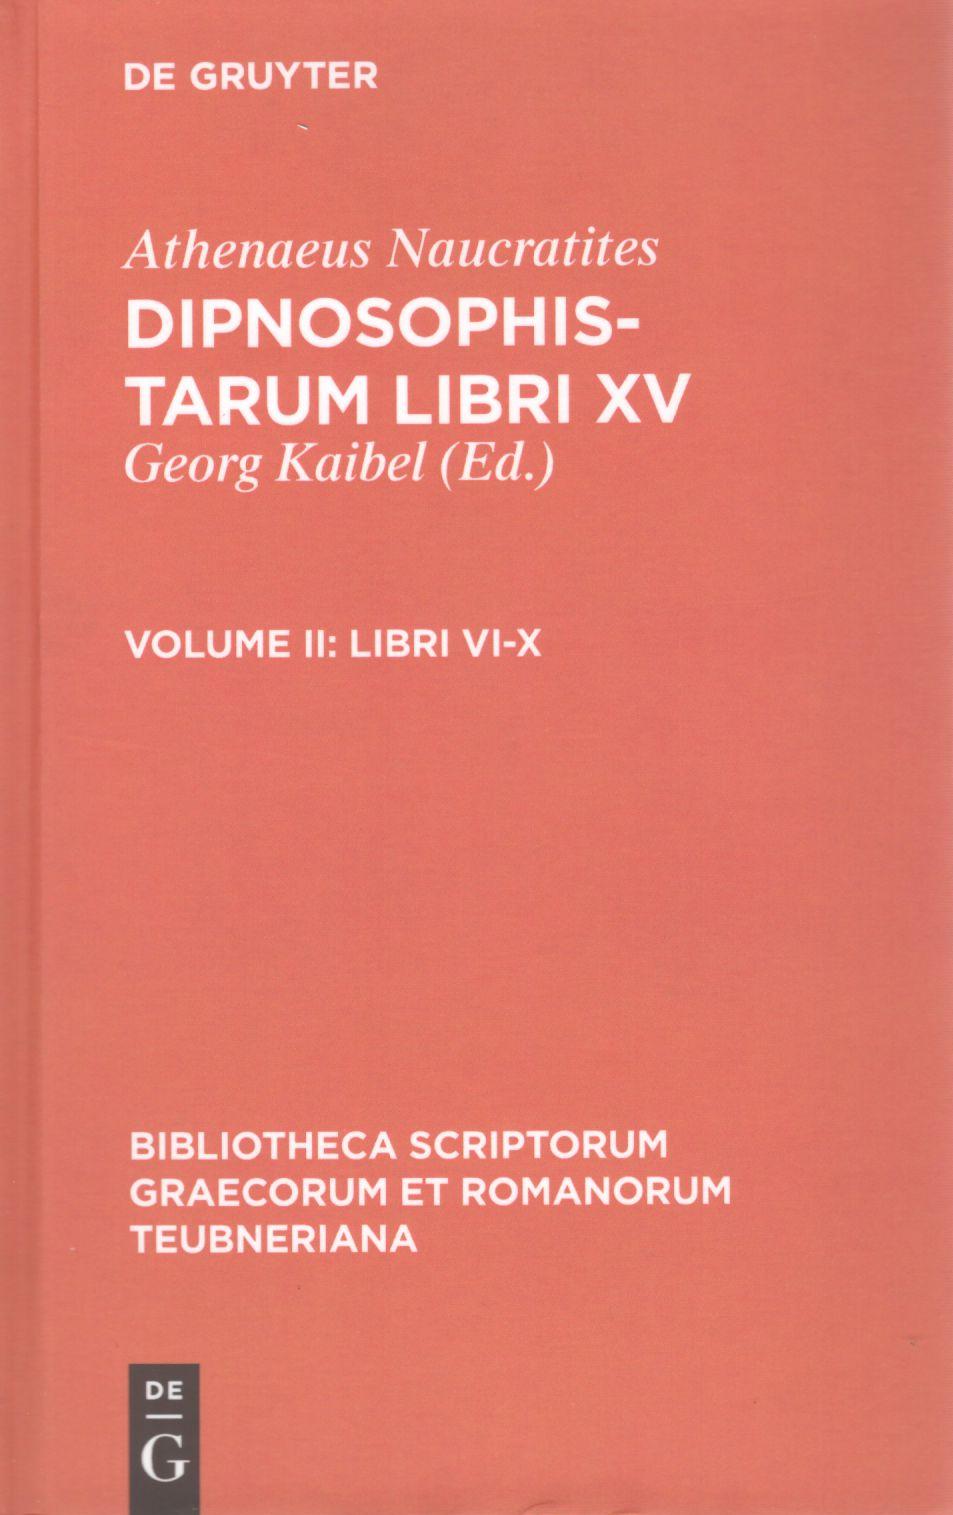 ATHENAEI NAUCRATITAE DIPNOSOPHISTARUM LIBRI XV - VOLUME II: LIBRI VI-X